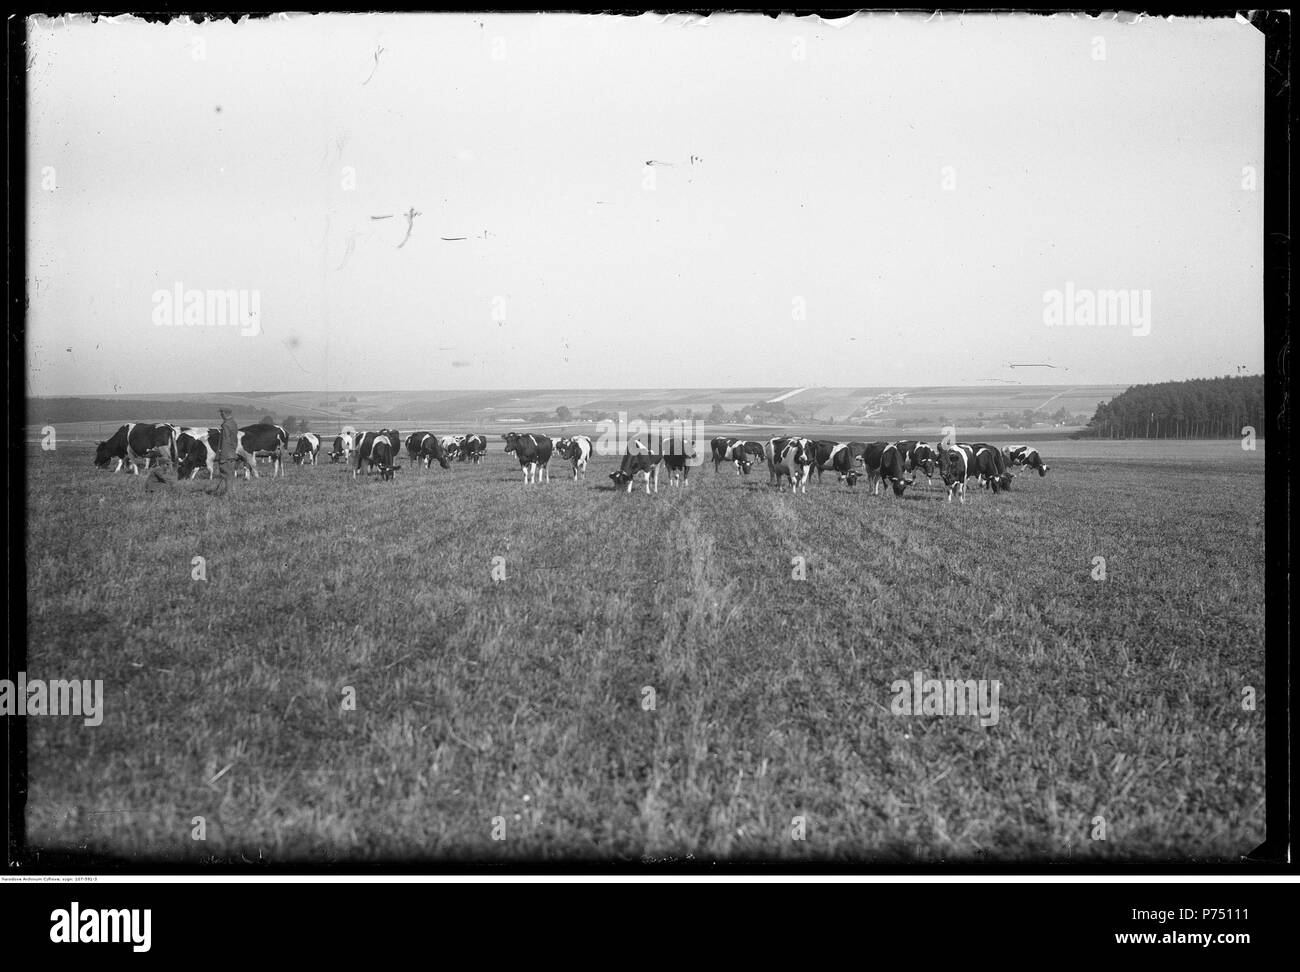 67 Narcyz Witczak-Witaczyński - Rolnictwo i hodowla w majątku ziemskim (107-591-3) Stock Photo